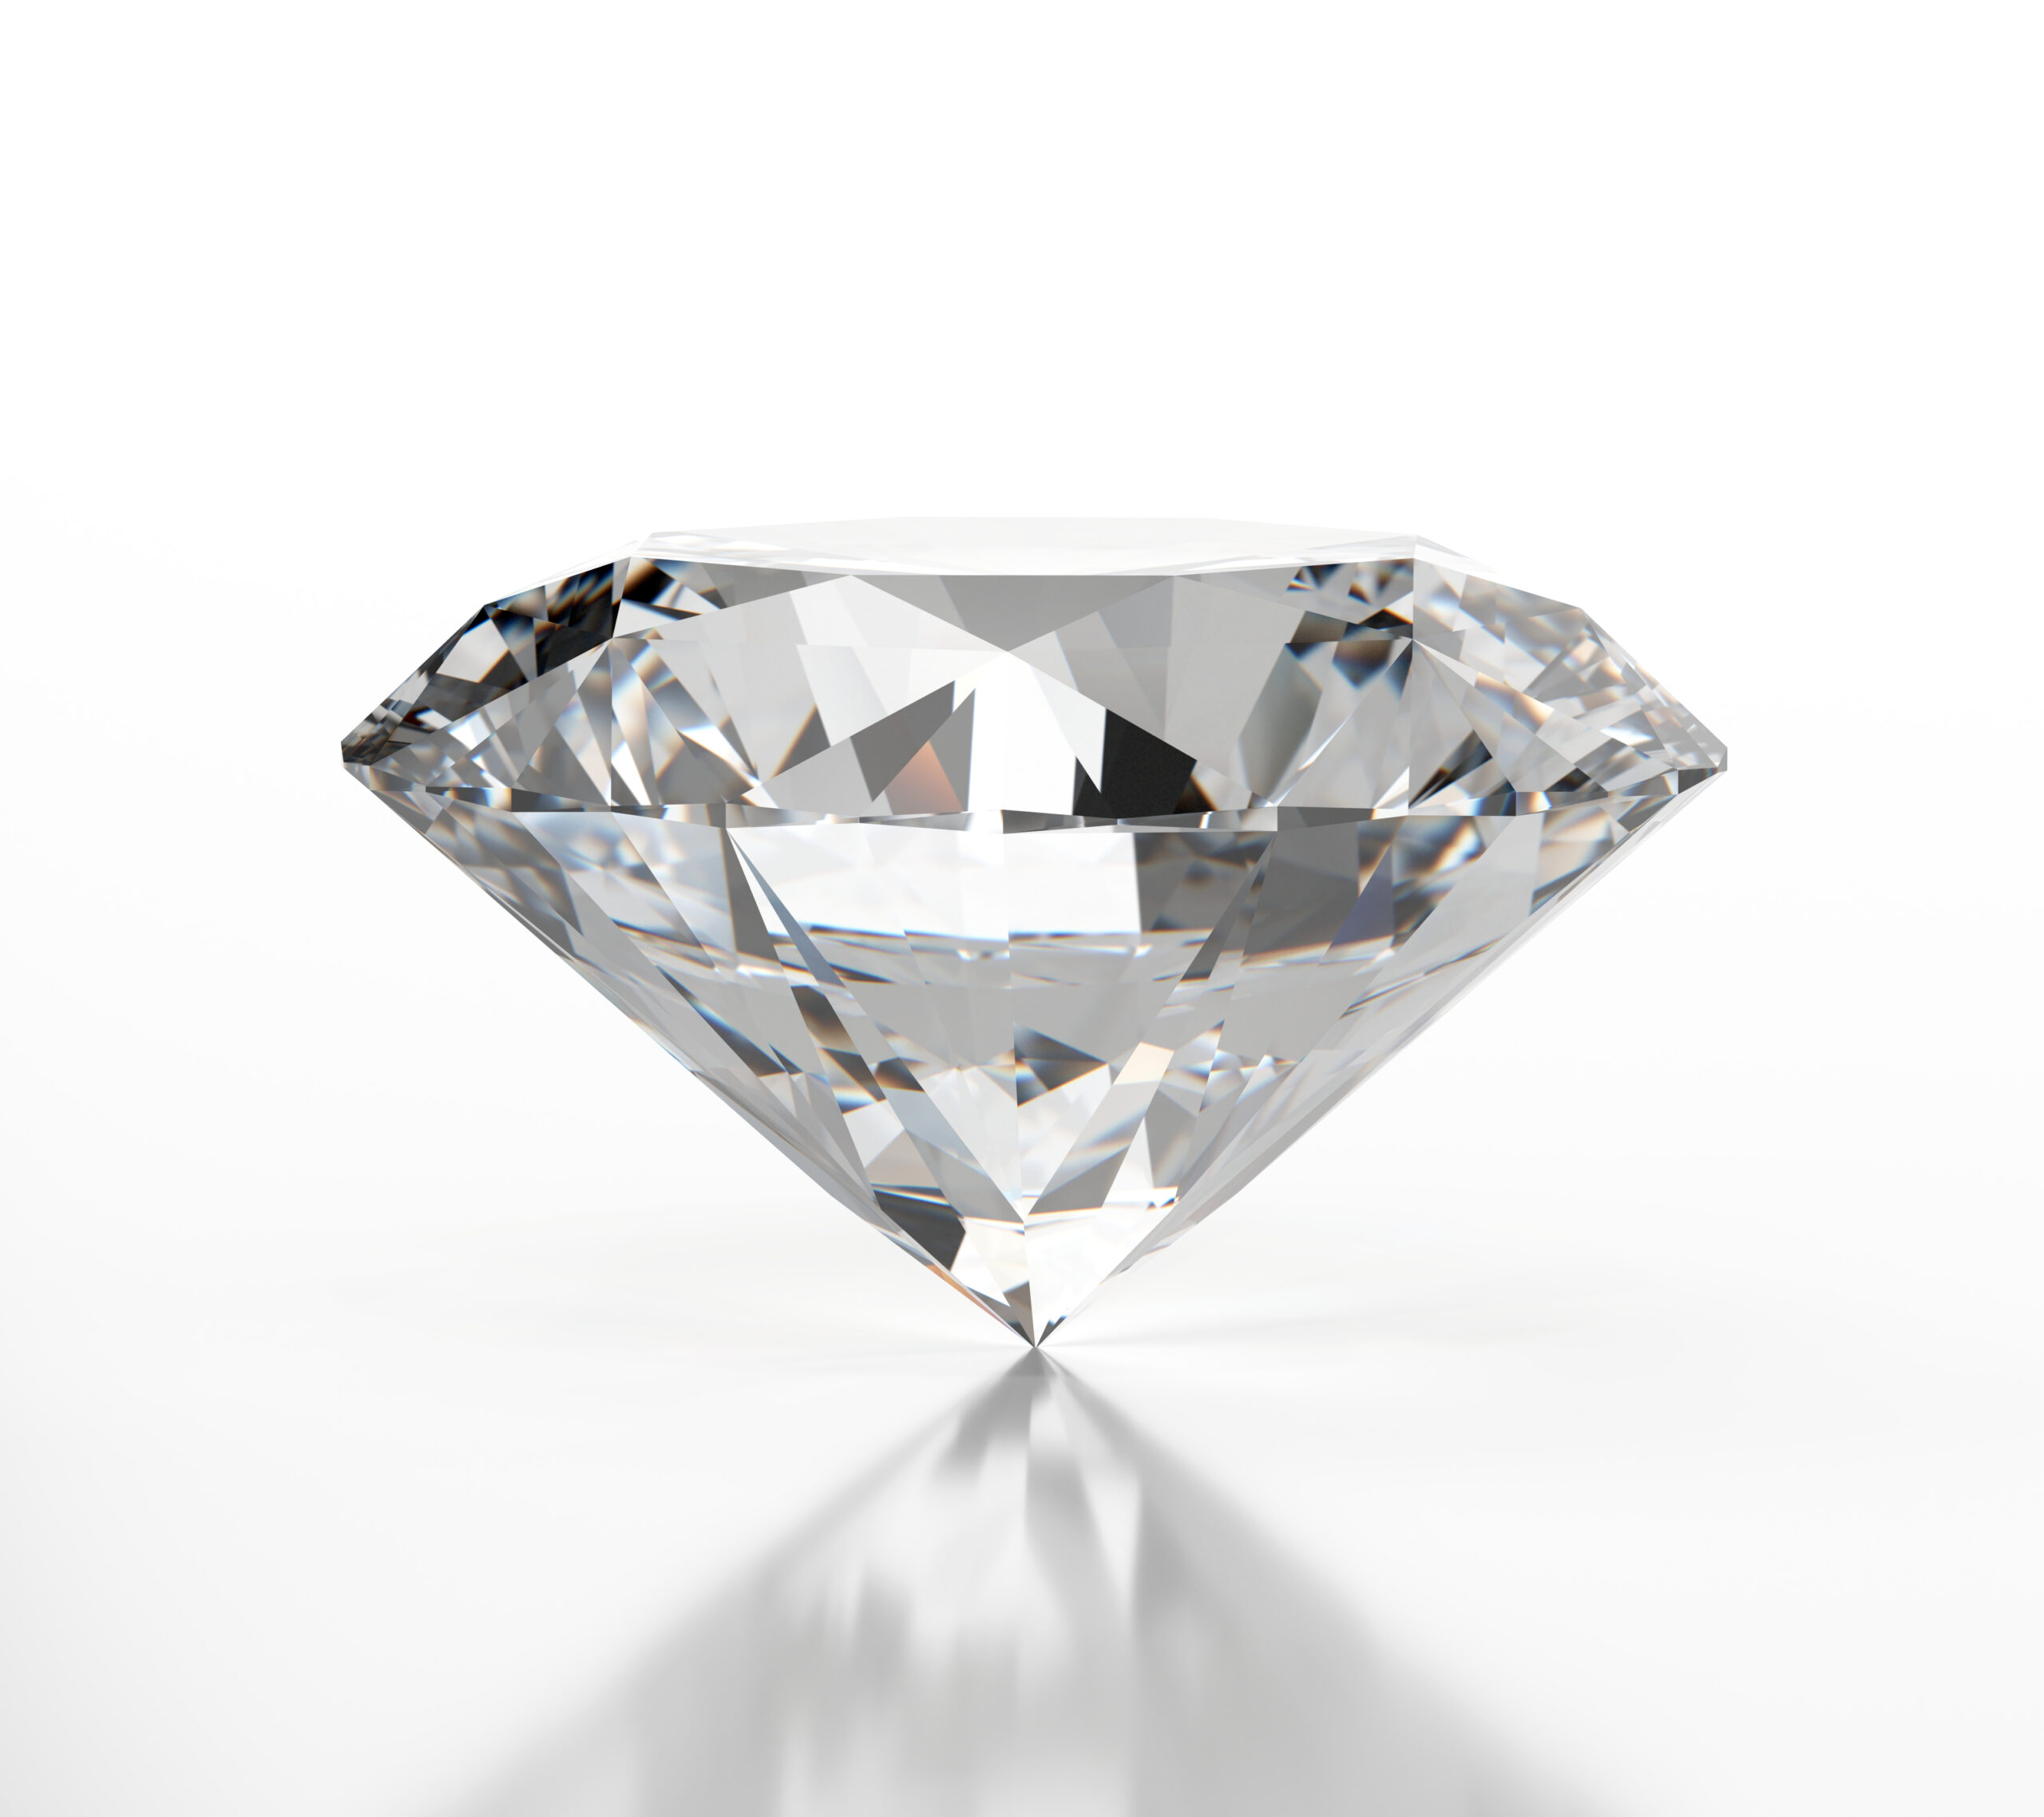 SELL DIAMONDS IN ORLANDO; 407-496-6433